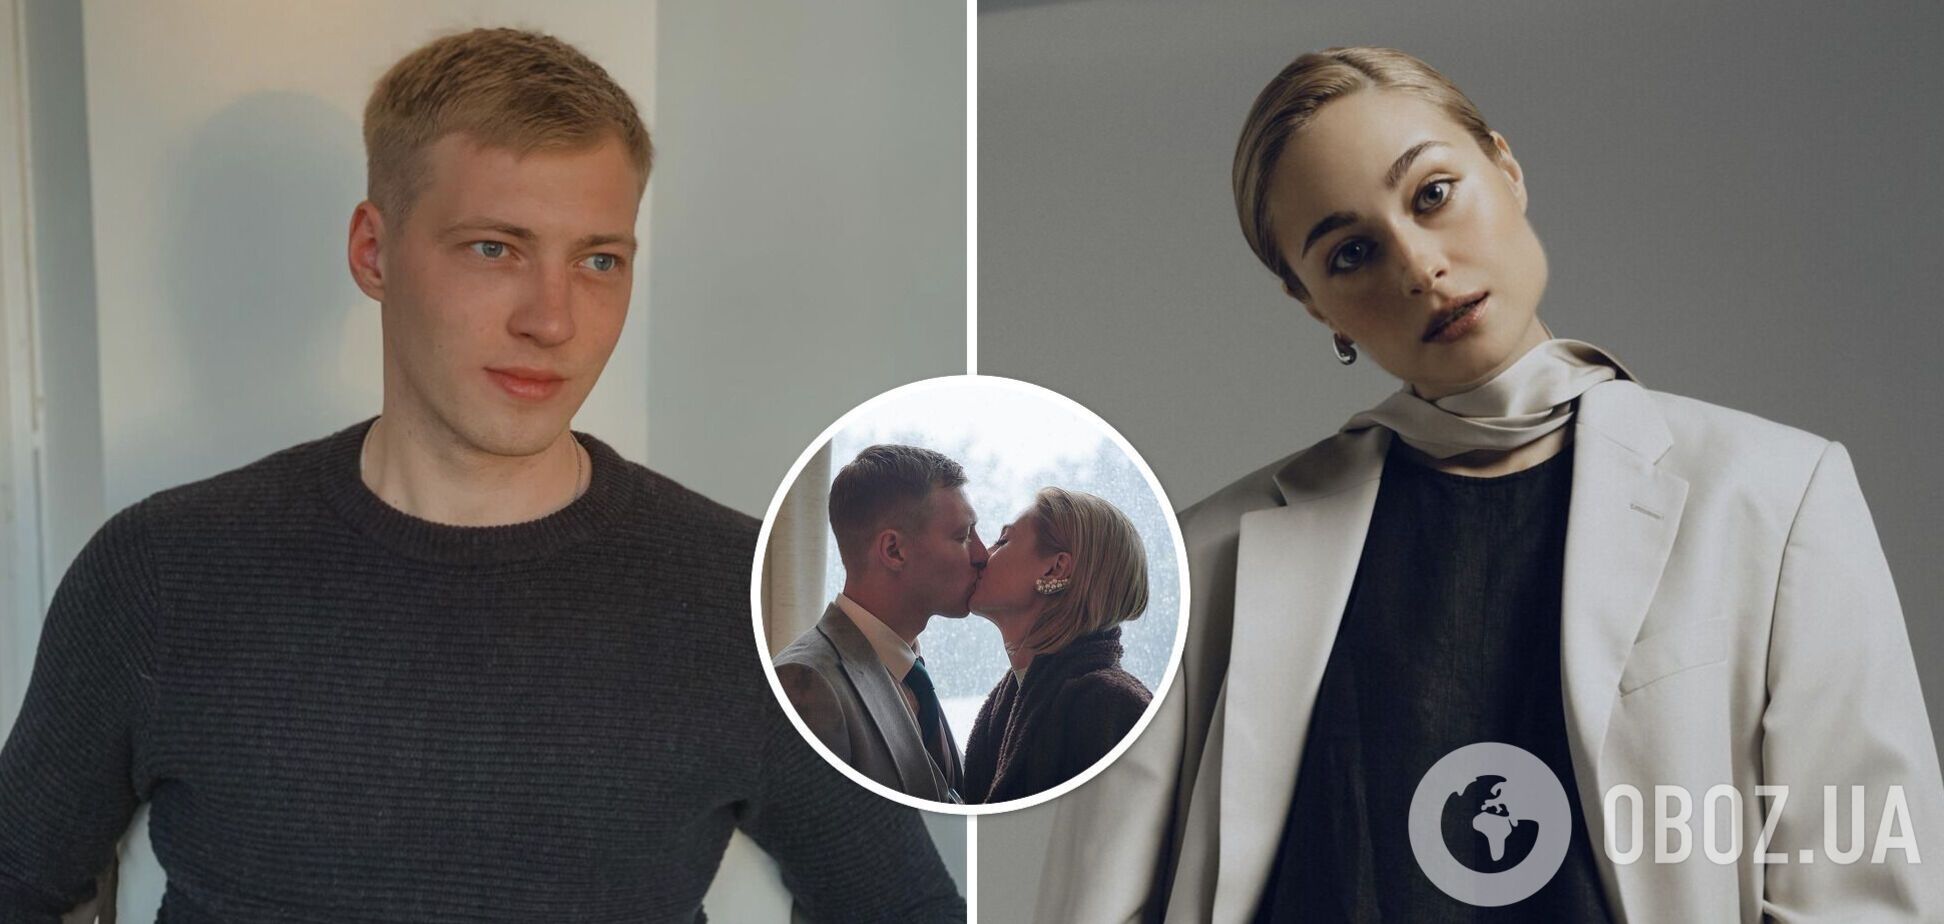 Звезда сериала 'Поймать Кайдаша' Григорий Бакланов и актриса Анастасия Цымбалару официально объявили о разводе. Фото пары